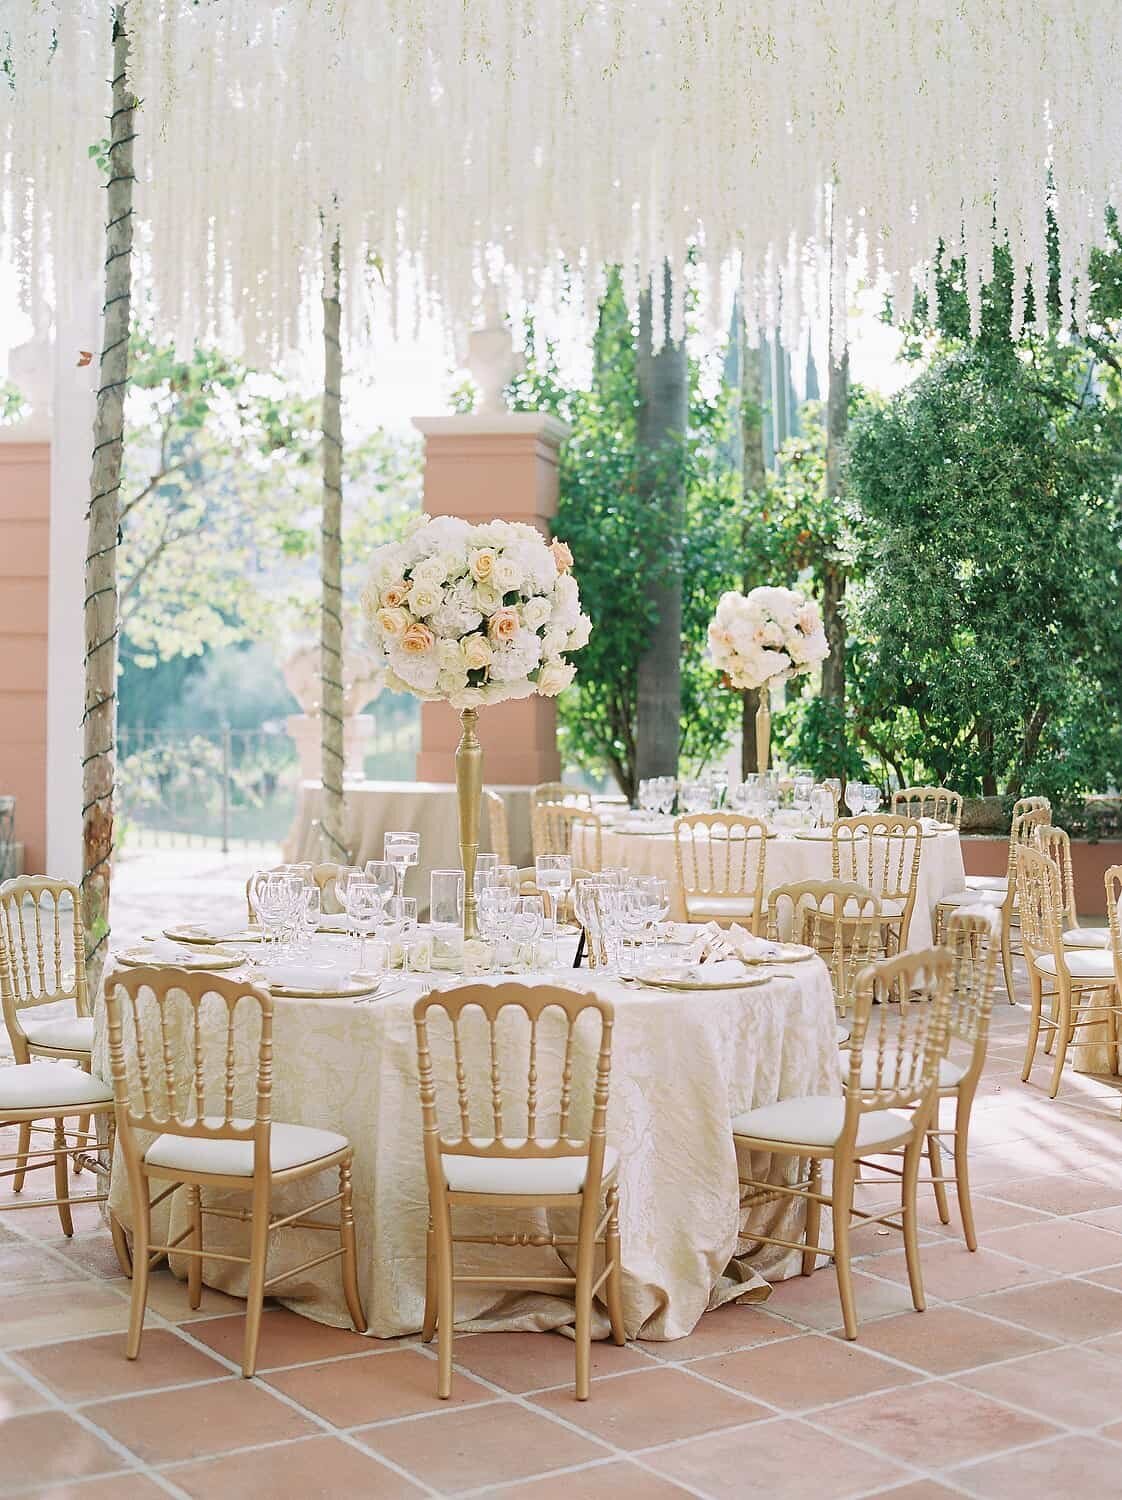 Anantara-Villa-Padierna-Palace-Wedding-reception-decoration-Marbella-Spain-by-Julia-Kaptelova-Photography-337